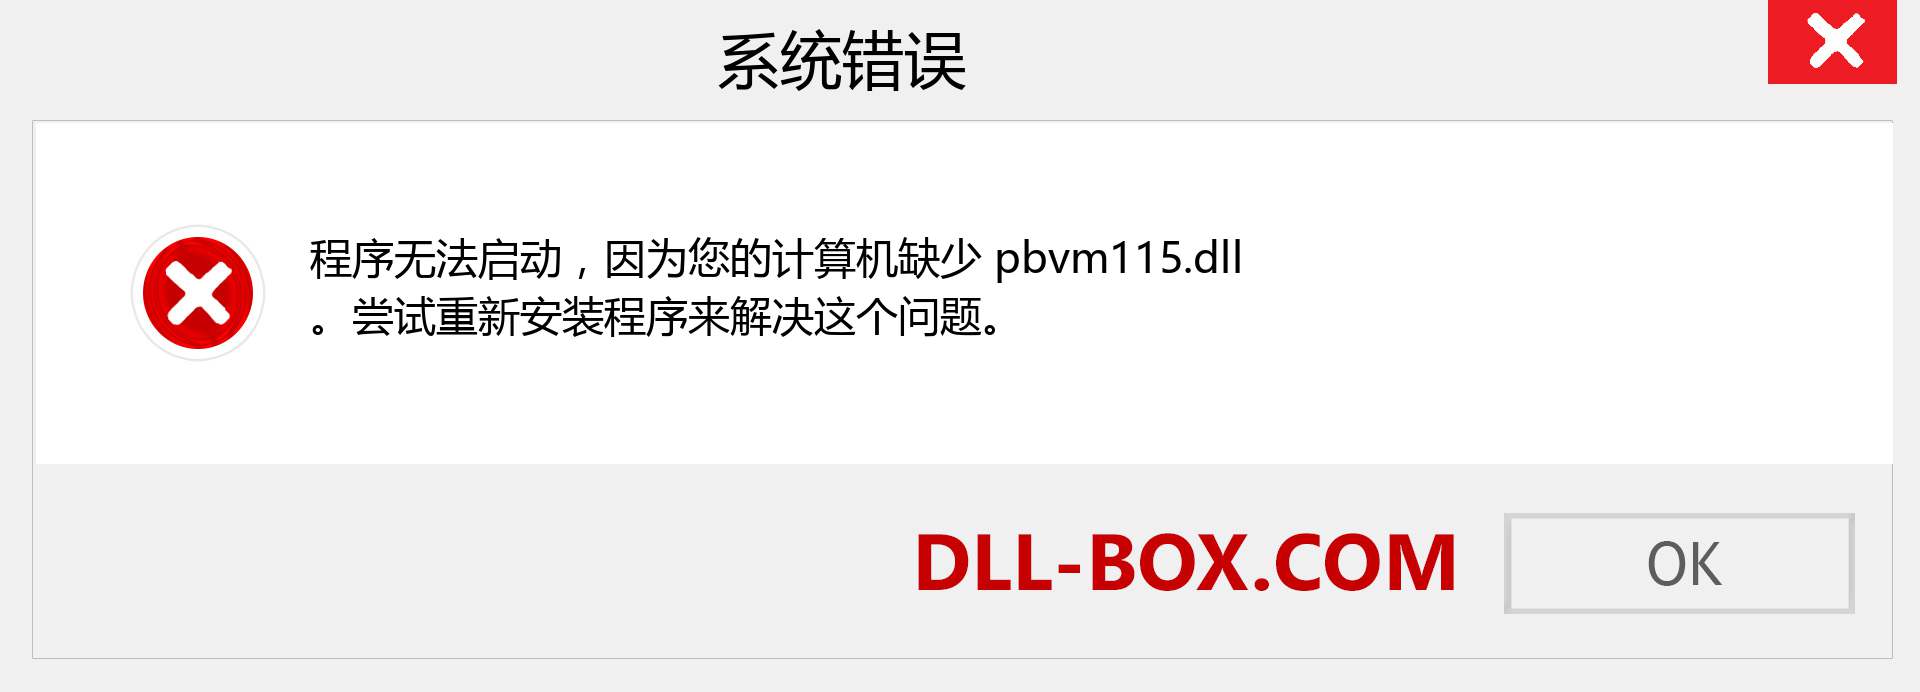 pbvm115.dll 文件丢失？。 适用于 Windows 7、8、10 的下载 - 修复 Windows、照片、图像上的 pbvm115 dll 丢失错误